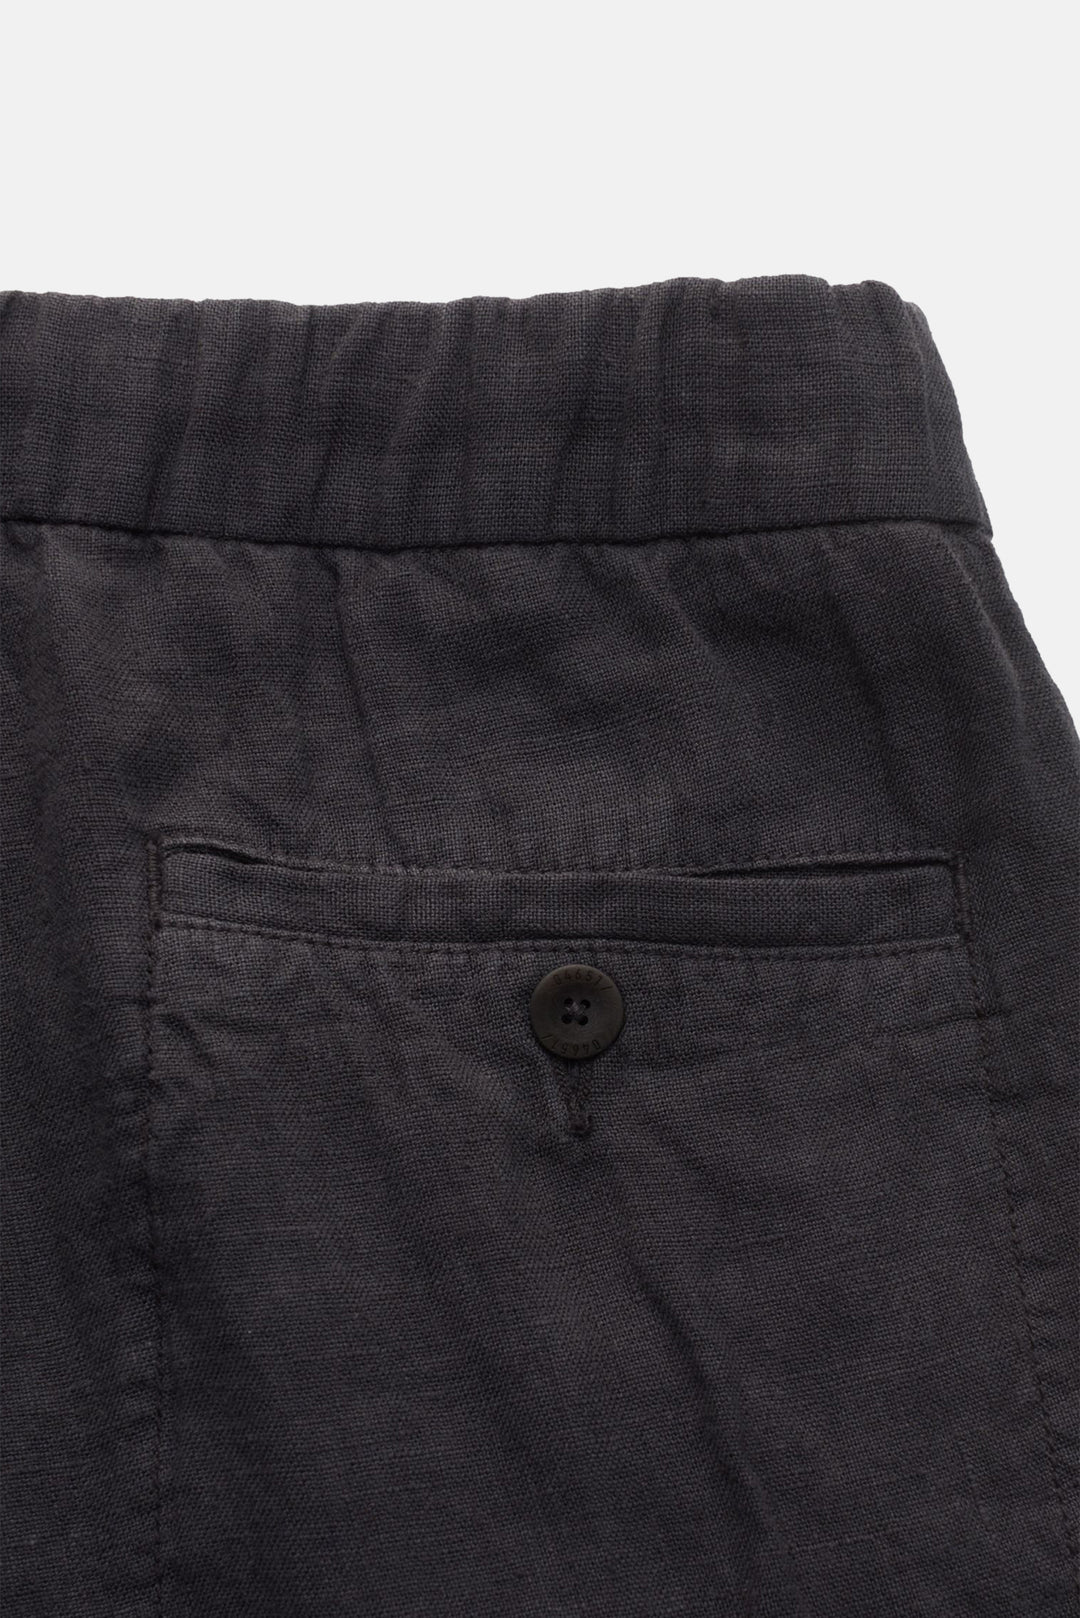 Linen Pants Charcoal